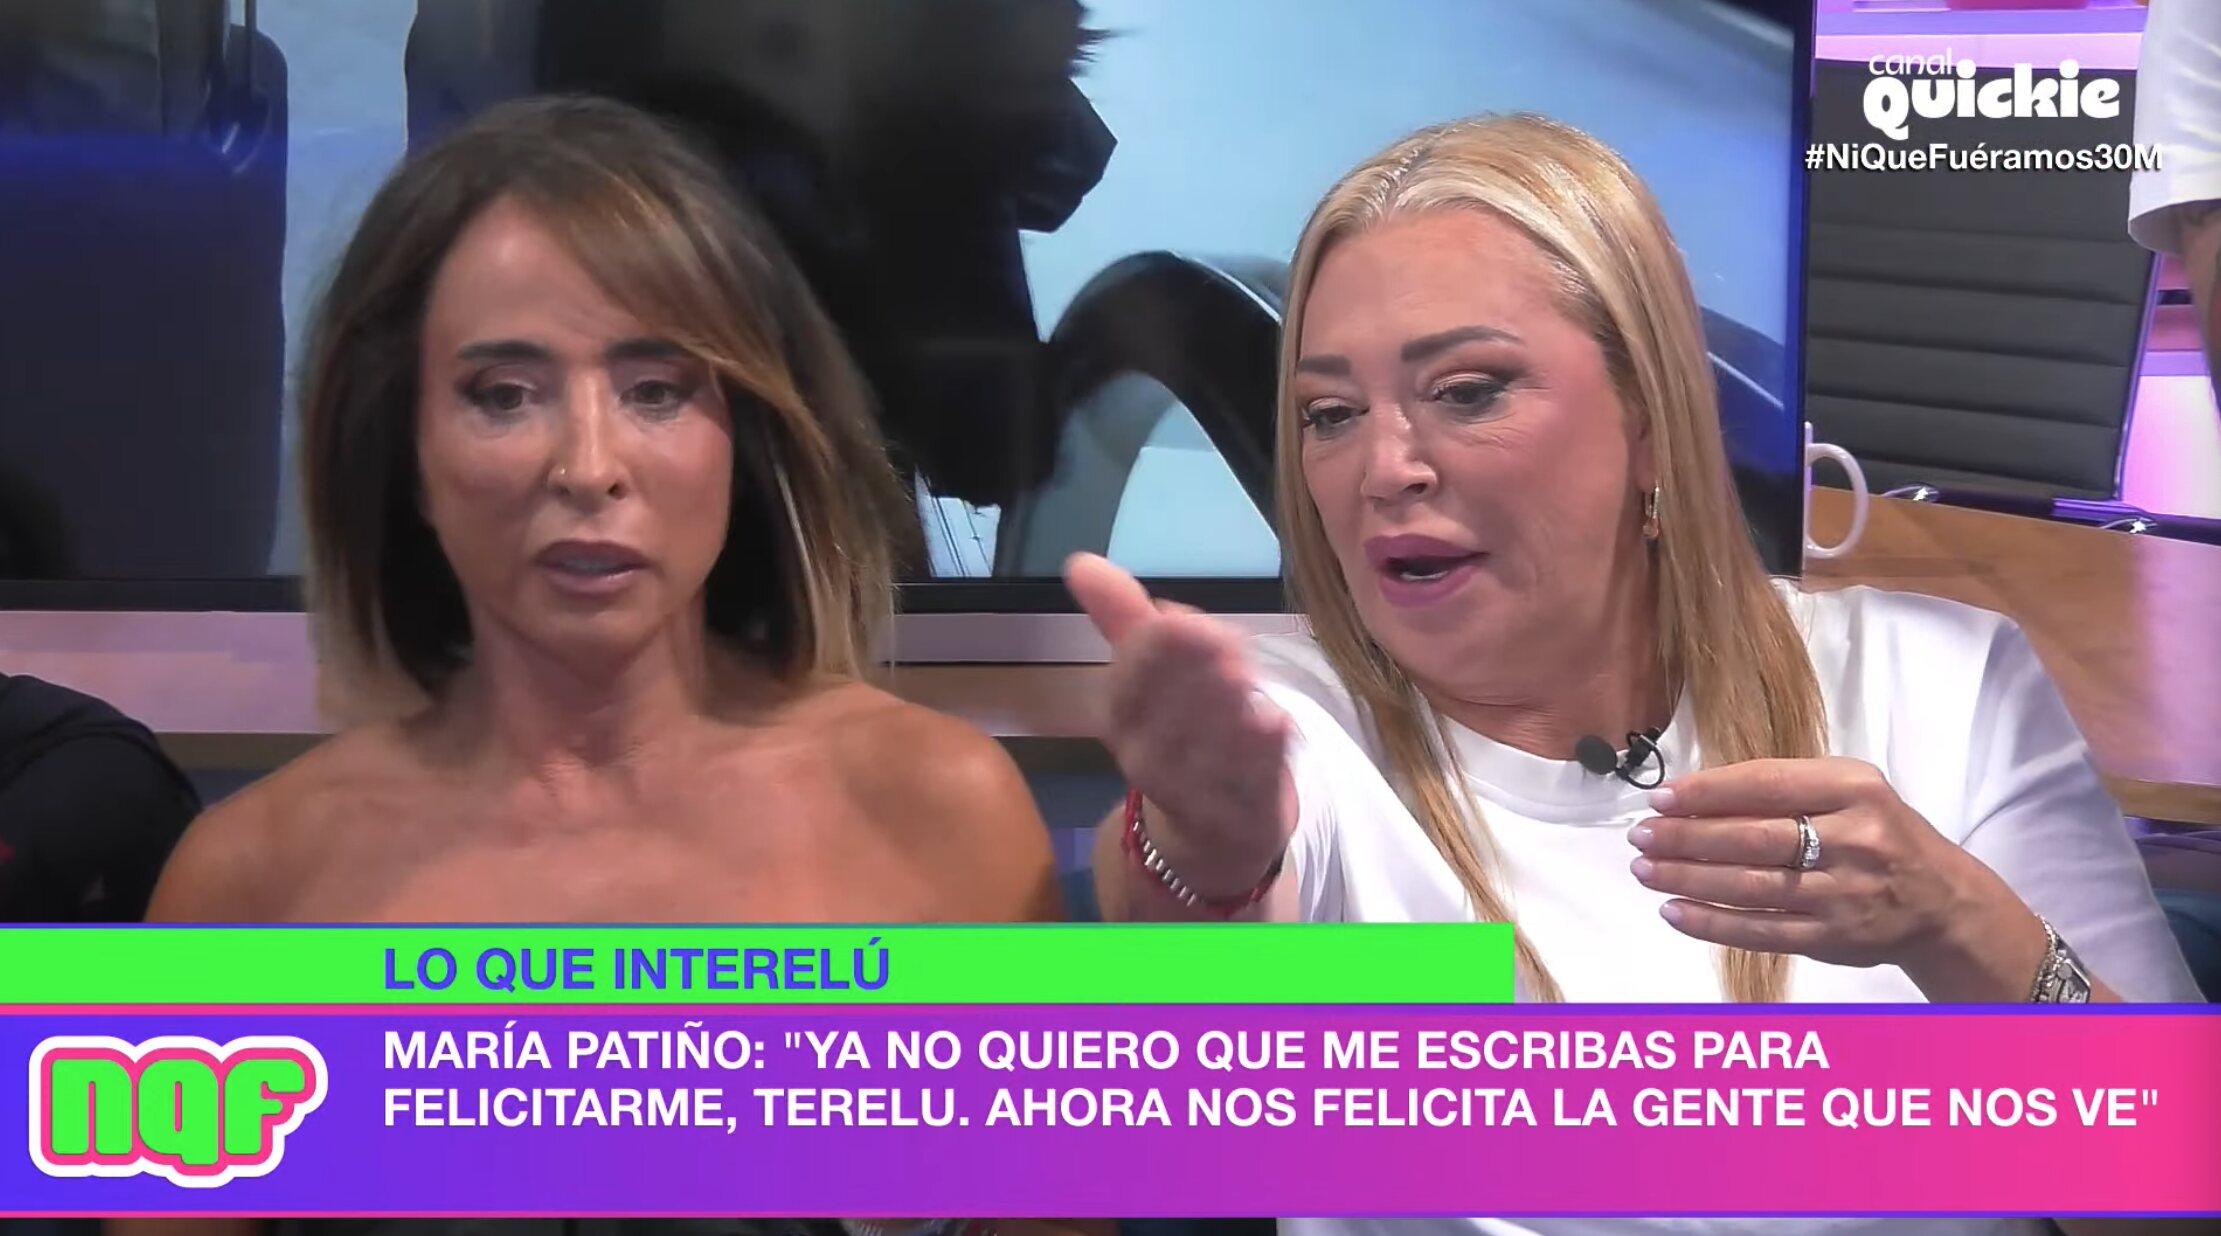 Belén Esteban y María Patiño, enfadadas con Terelu Campos | Foto: Canal Quickie